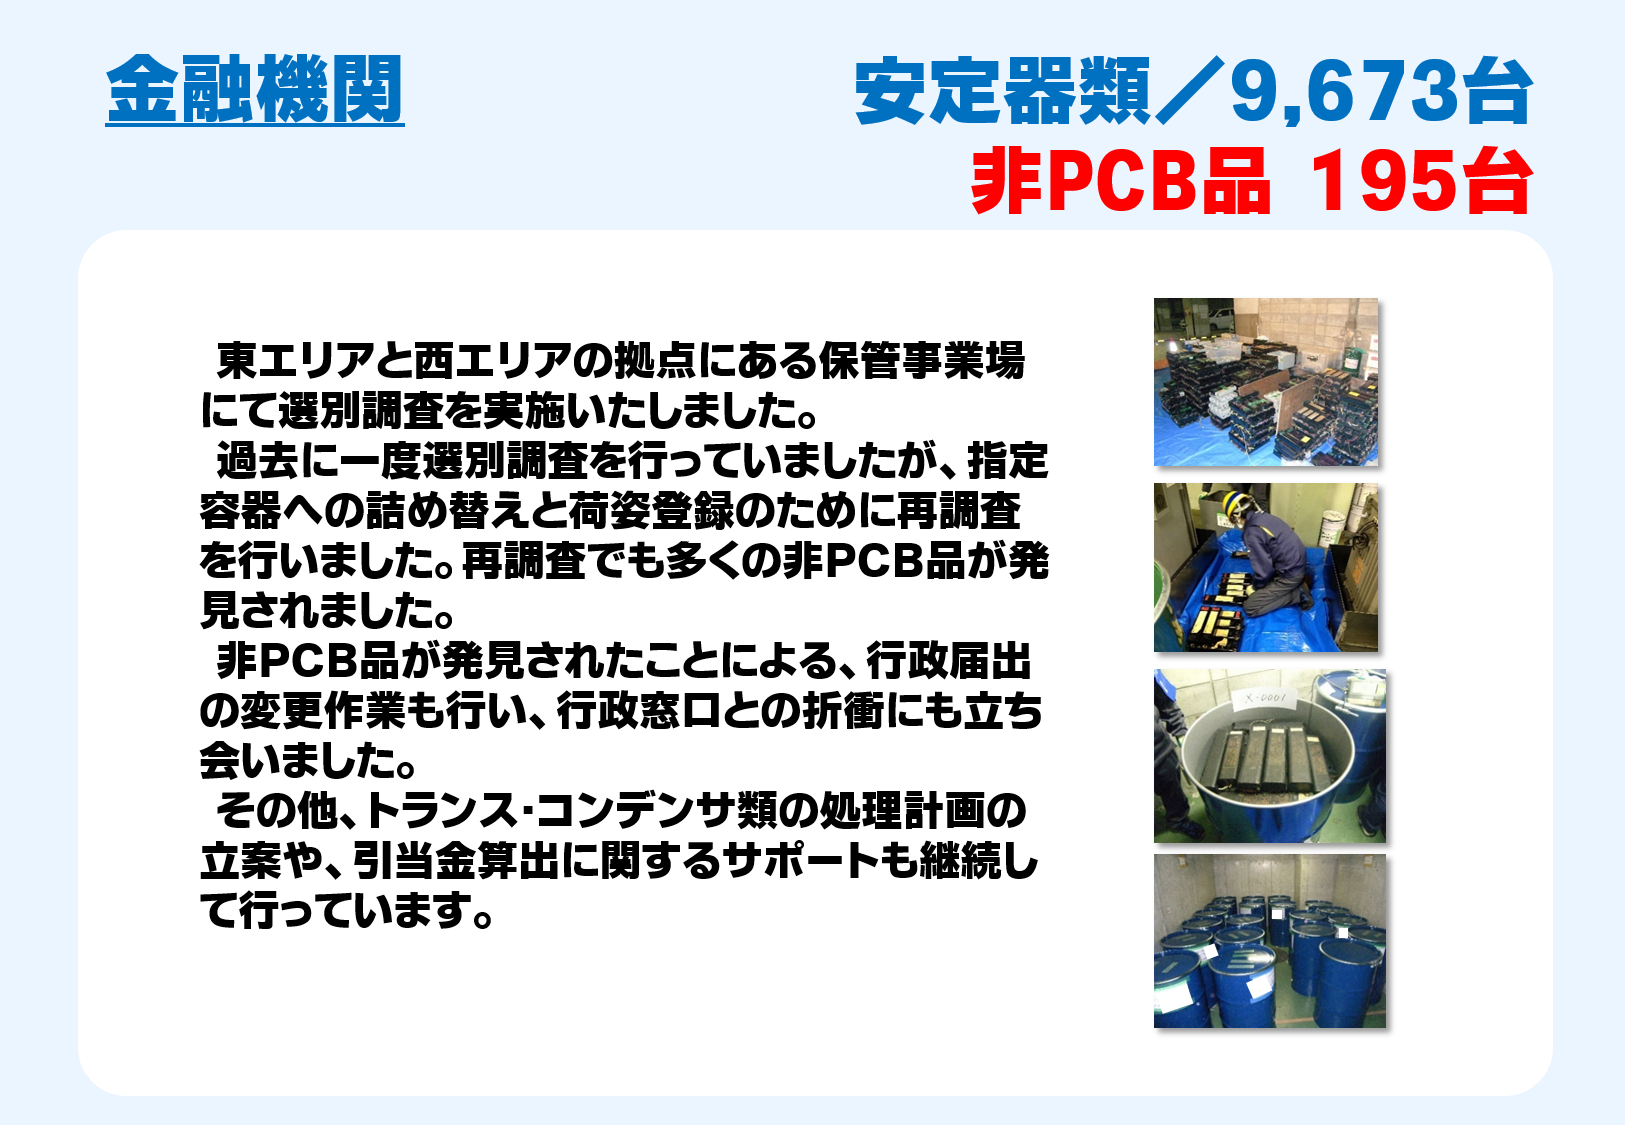 PCB_20160329_3